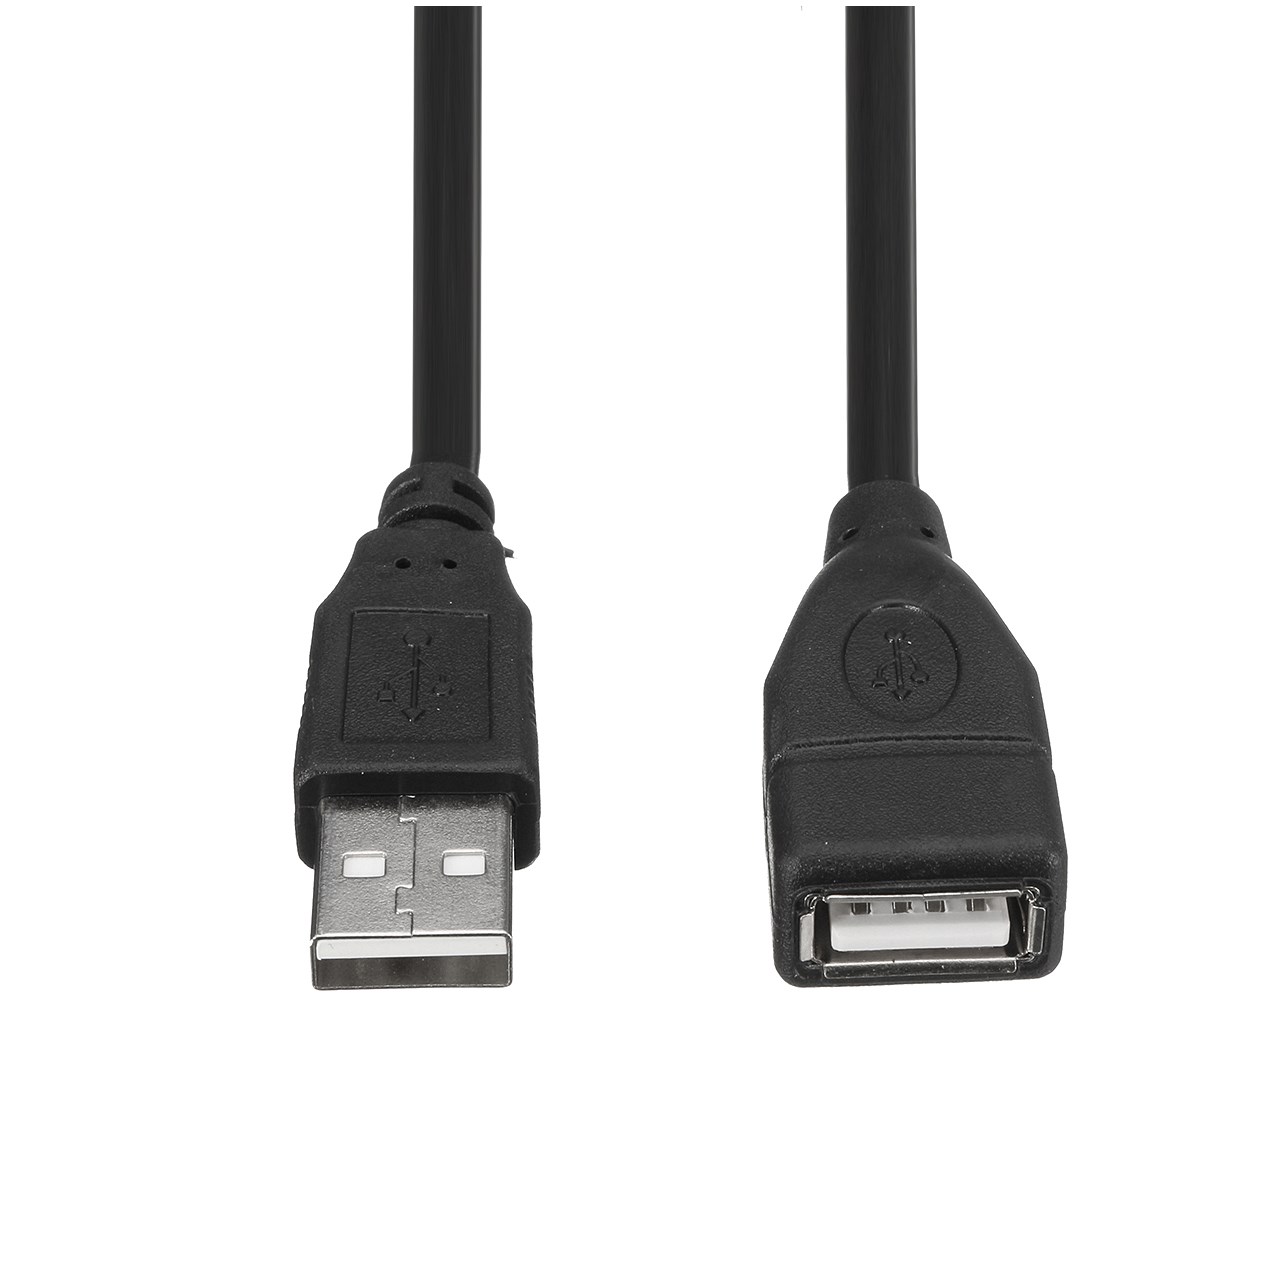 کابل افزایش طول USB مدل NVU-02 به طول 1.5 متر